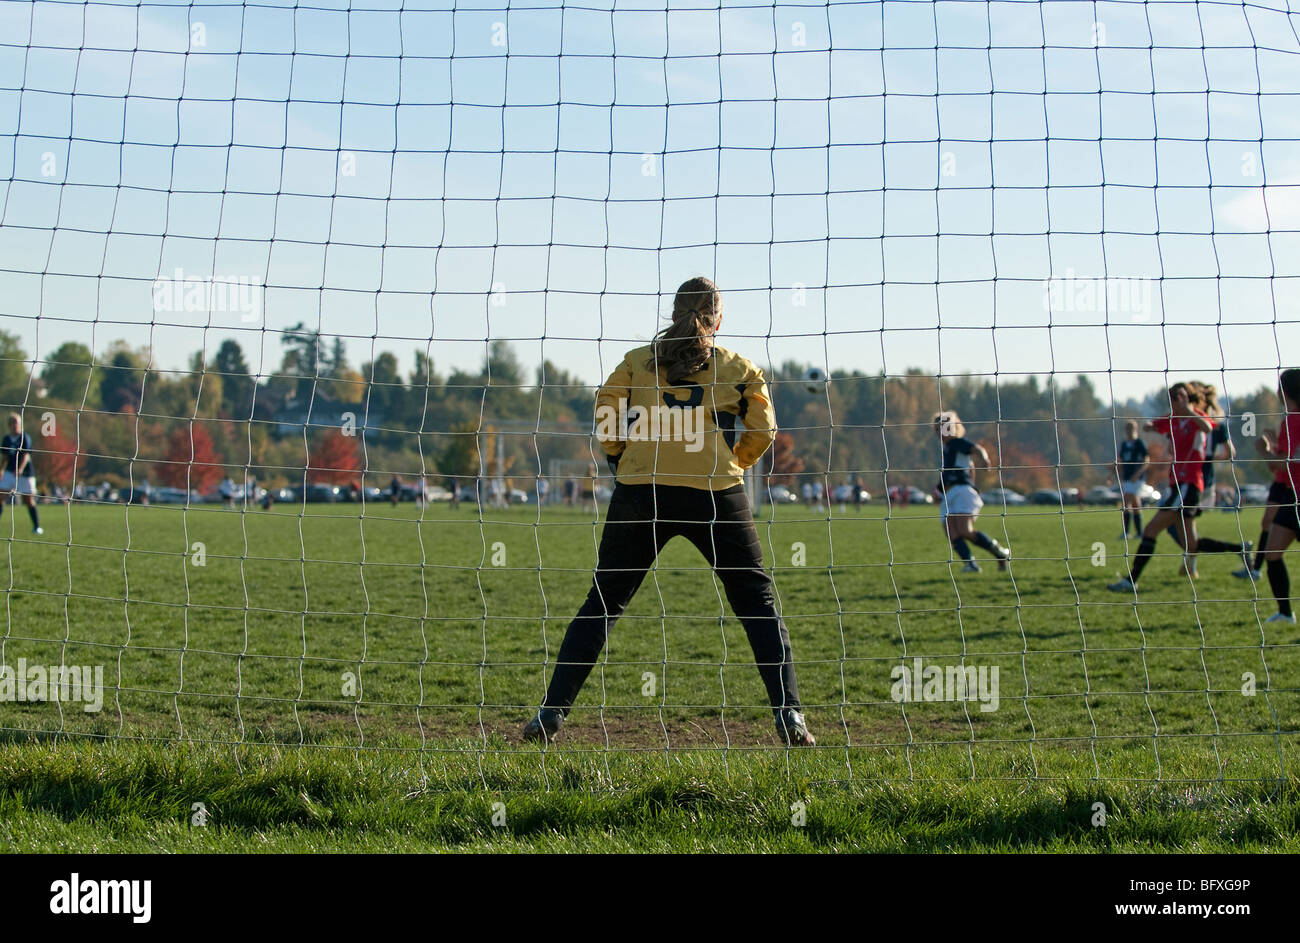 Female soccer goalkeeper guarding goal. Stock Photo